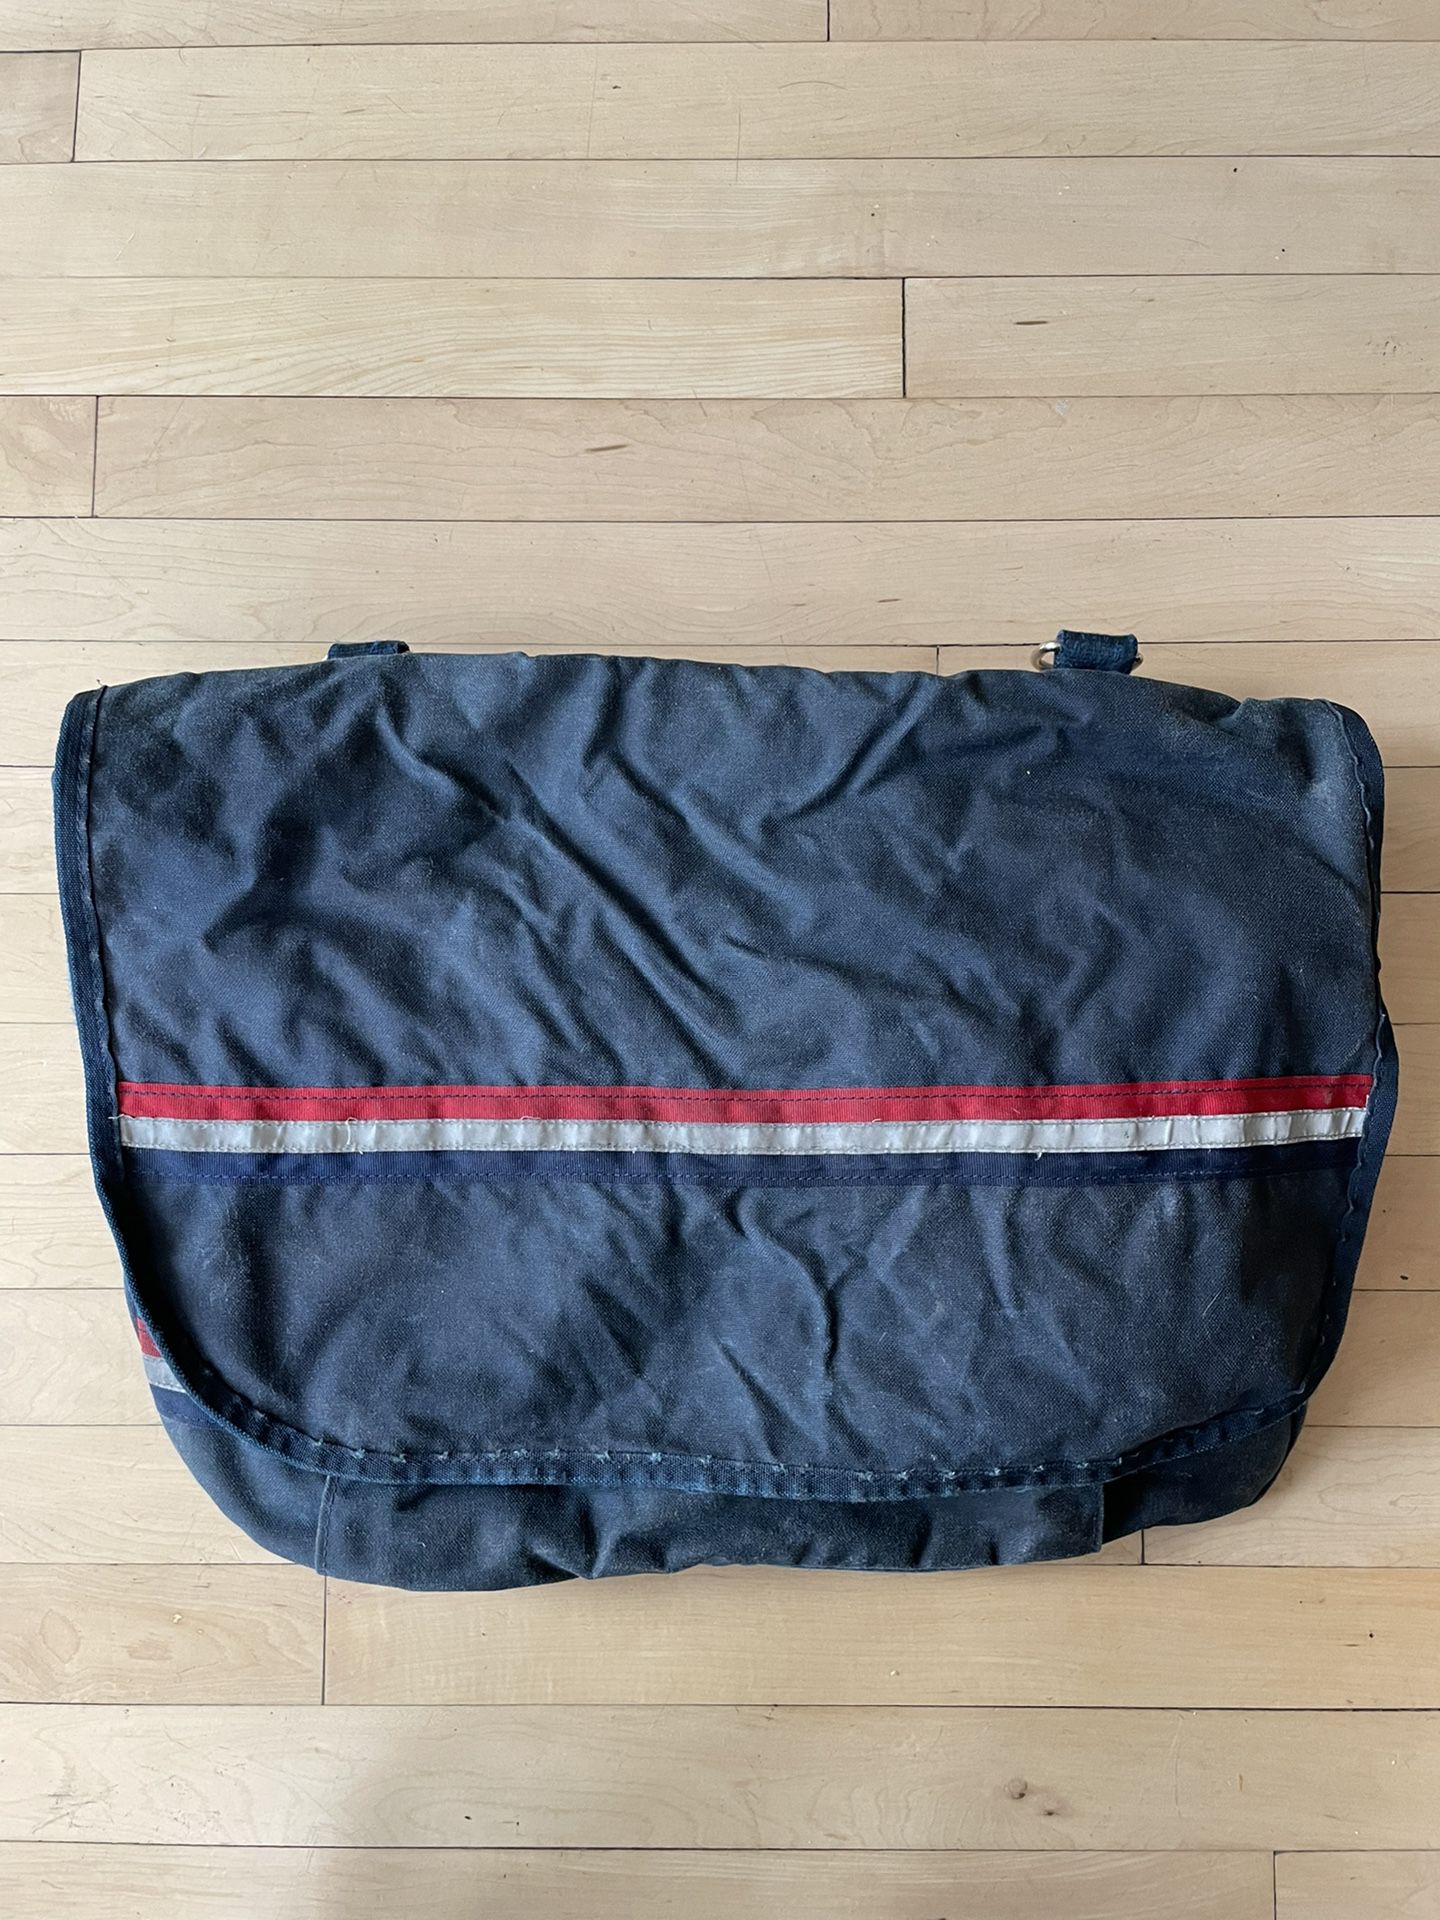 Original USPS Vintage Messenger Bag